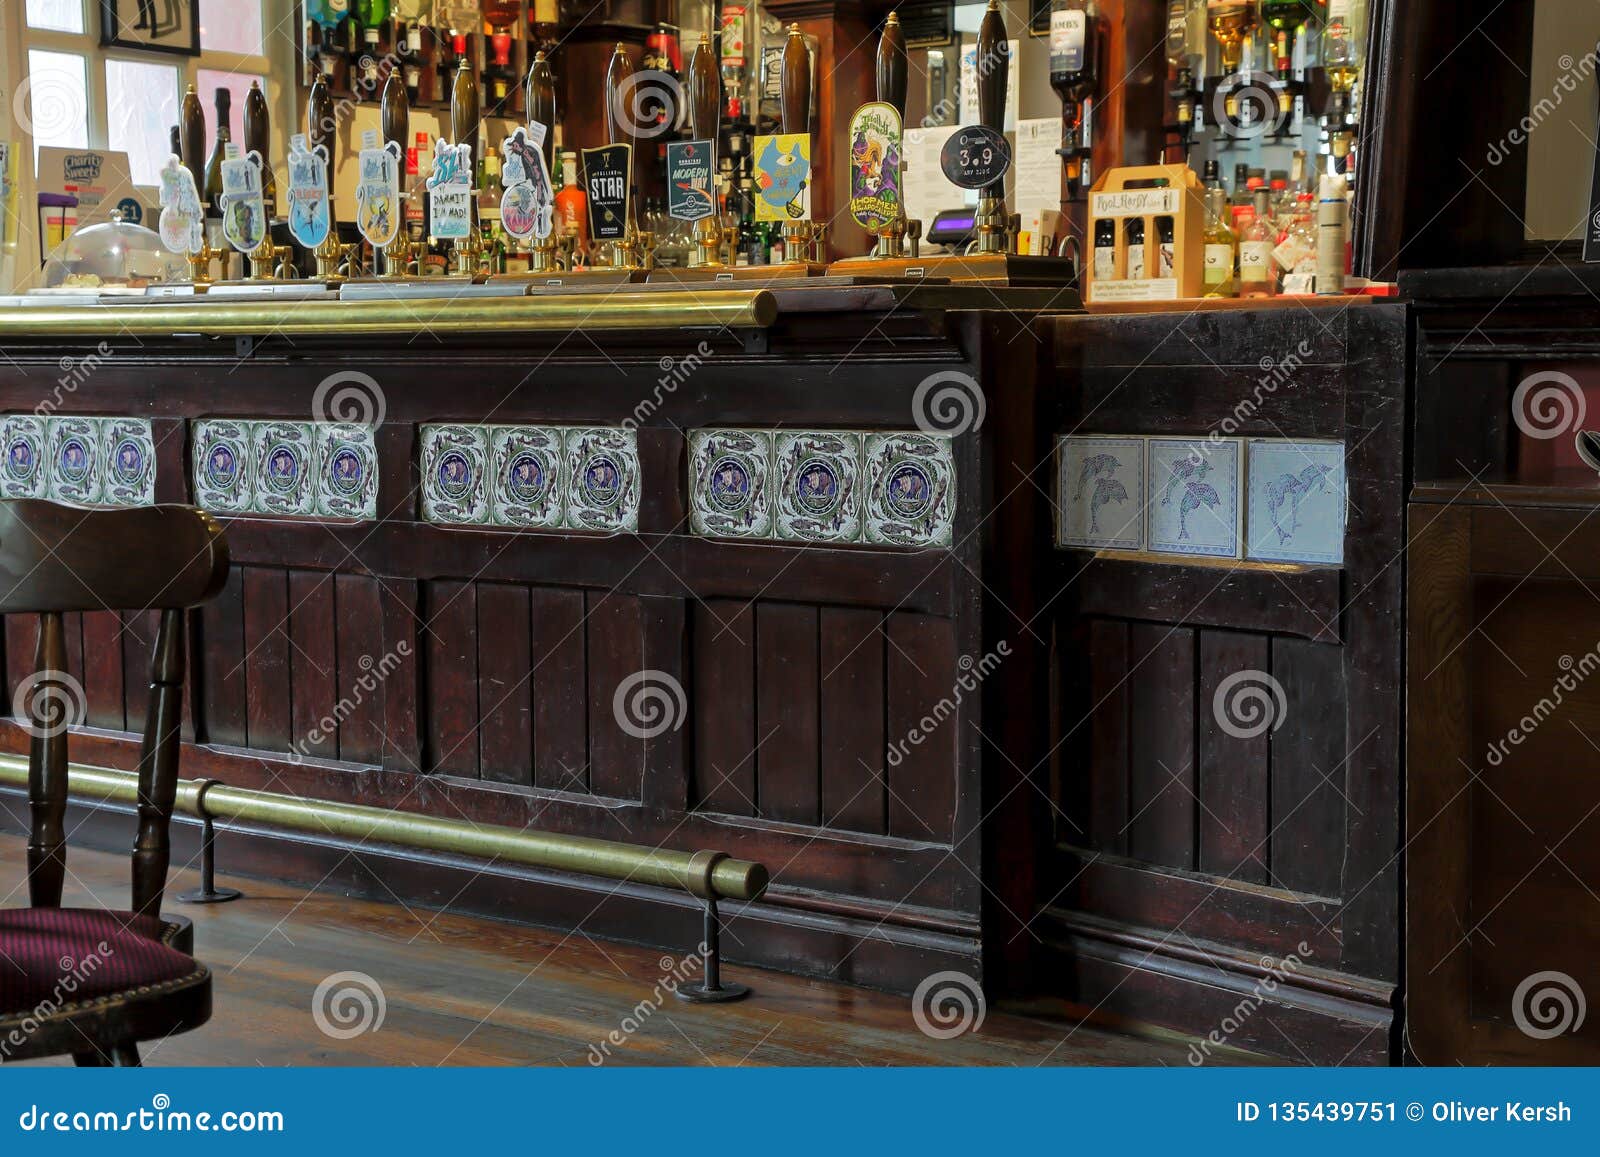 traditional british pub interior